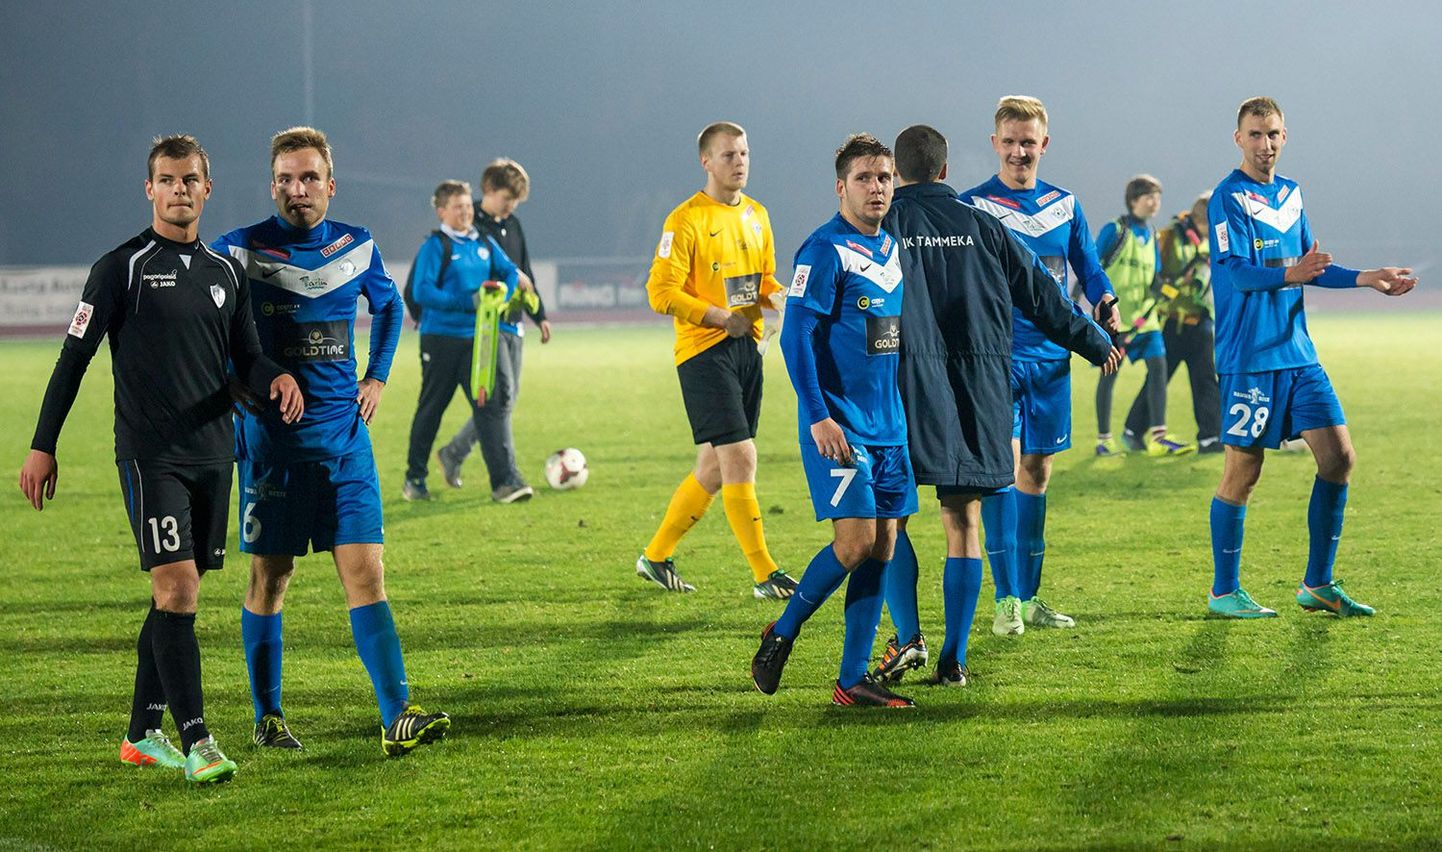 Jalgpallikohtumine Tartu Tammeka ja Tallinna Kalevi vahel 3. oktoobril, mille tartlased võitsid 2:1.